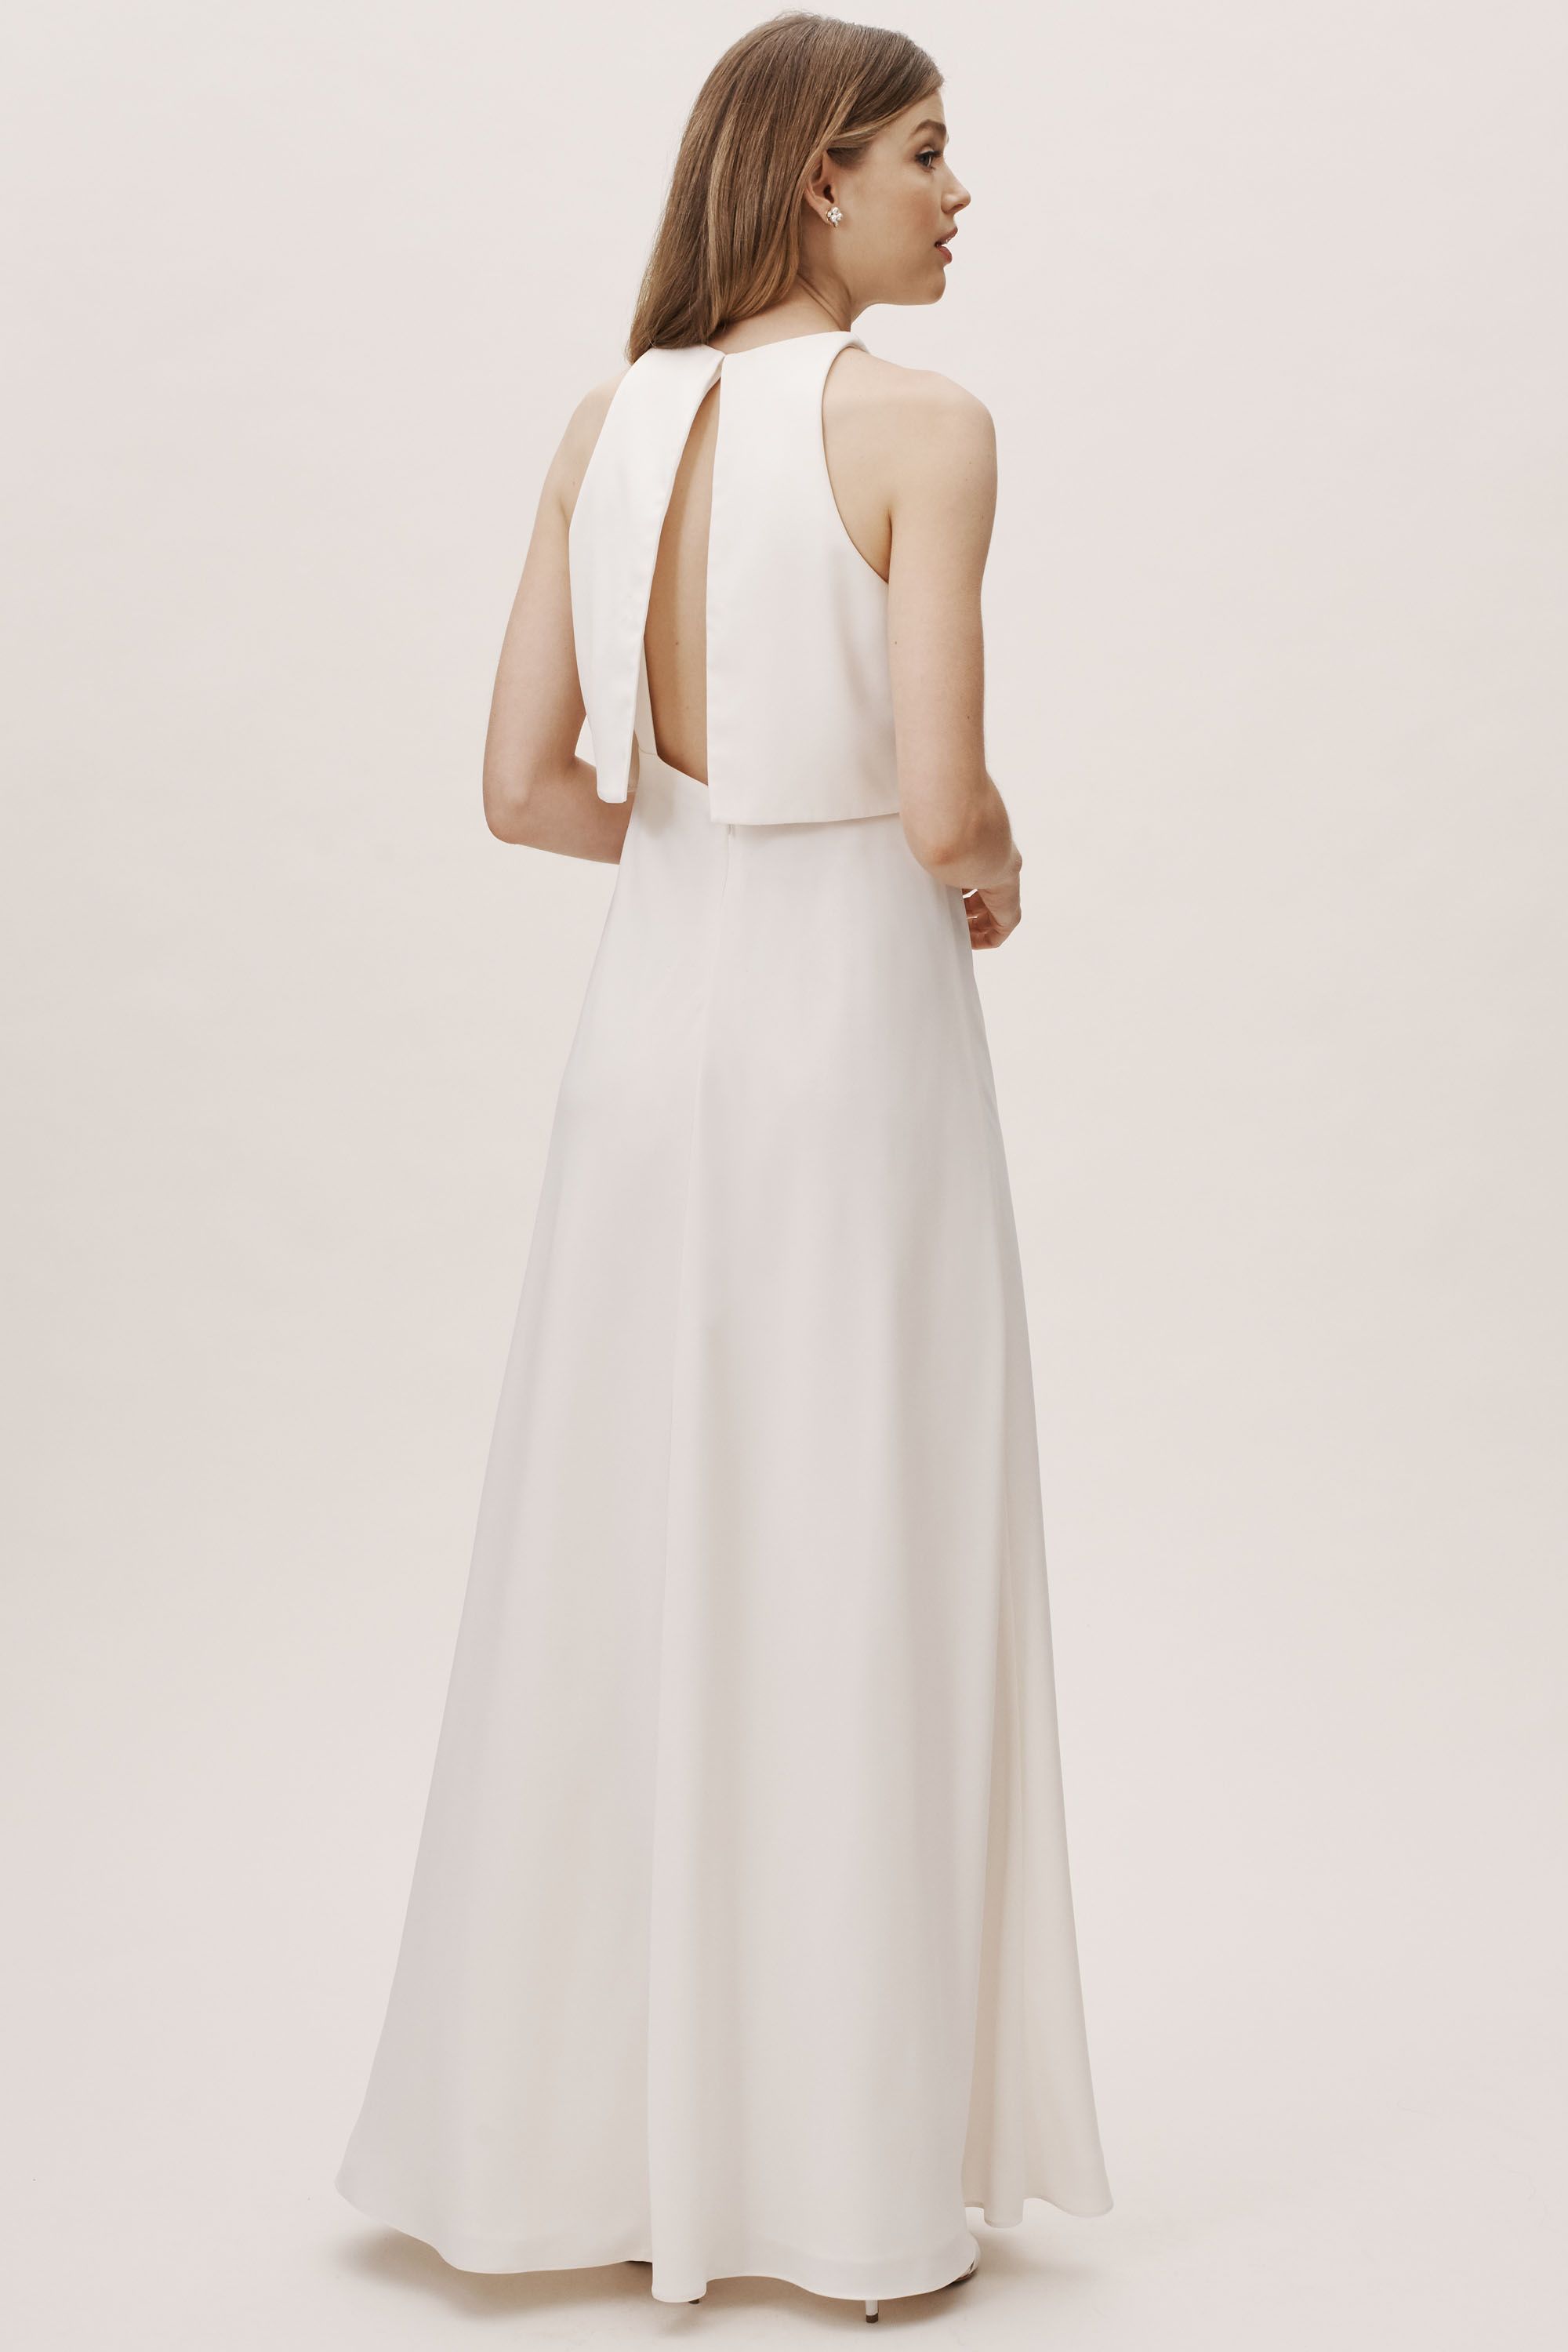 jill stuart white dress